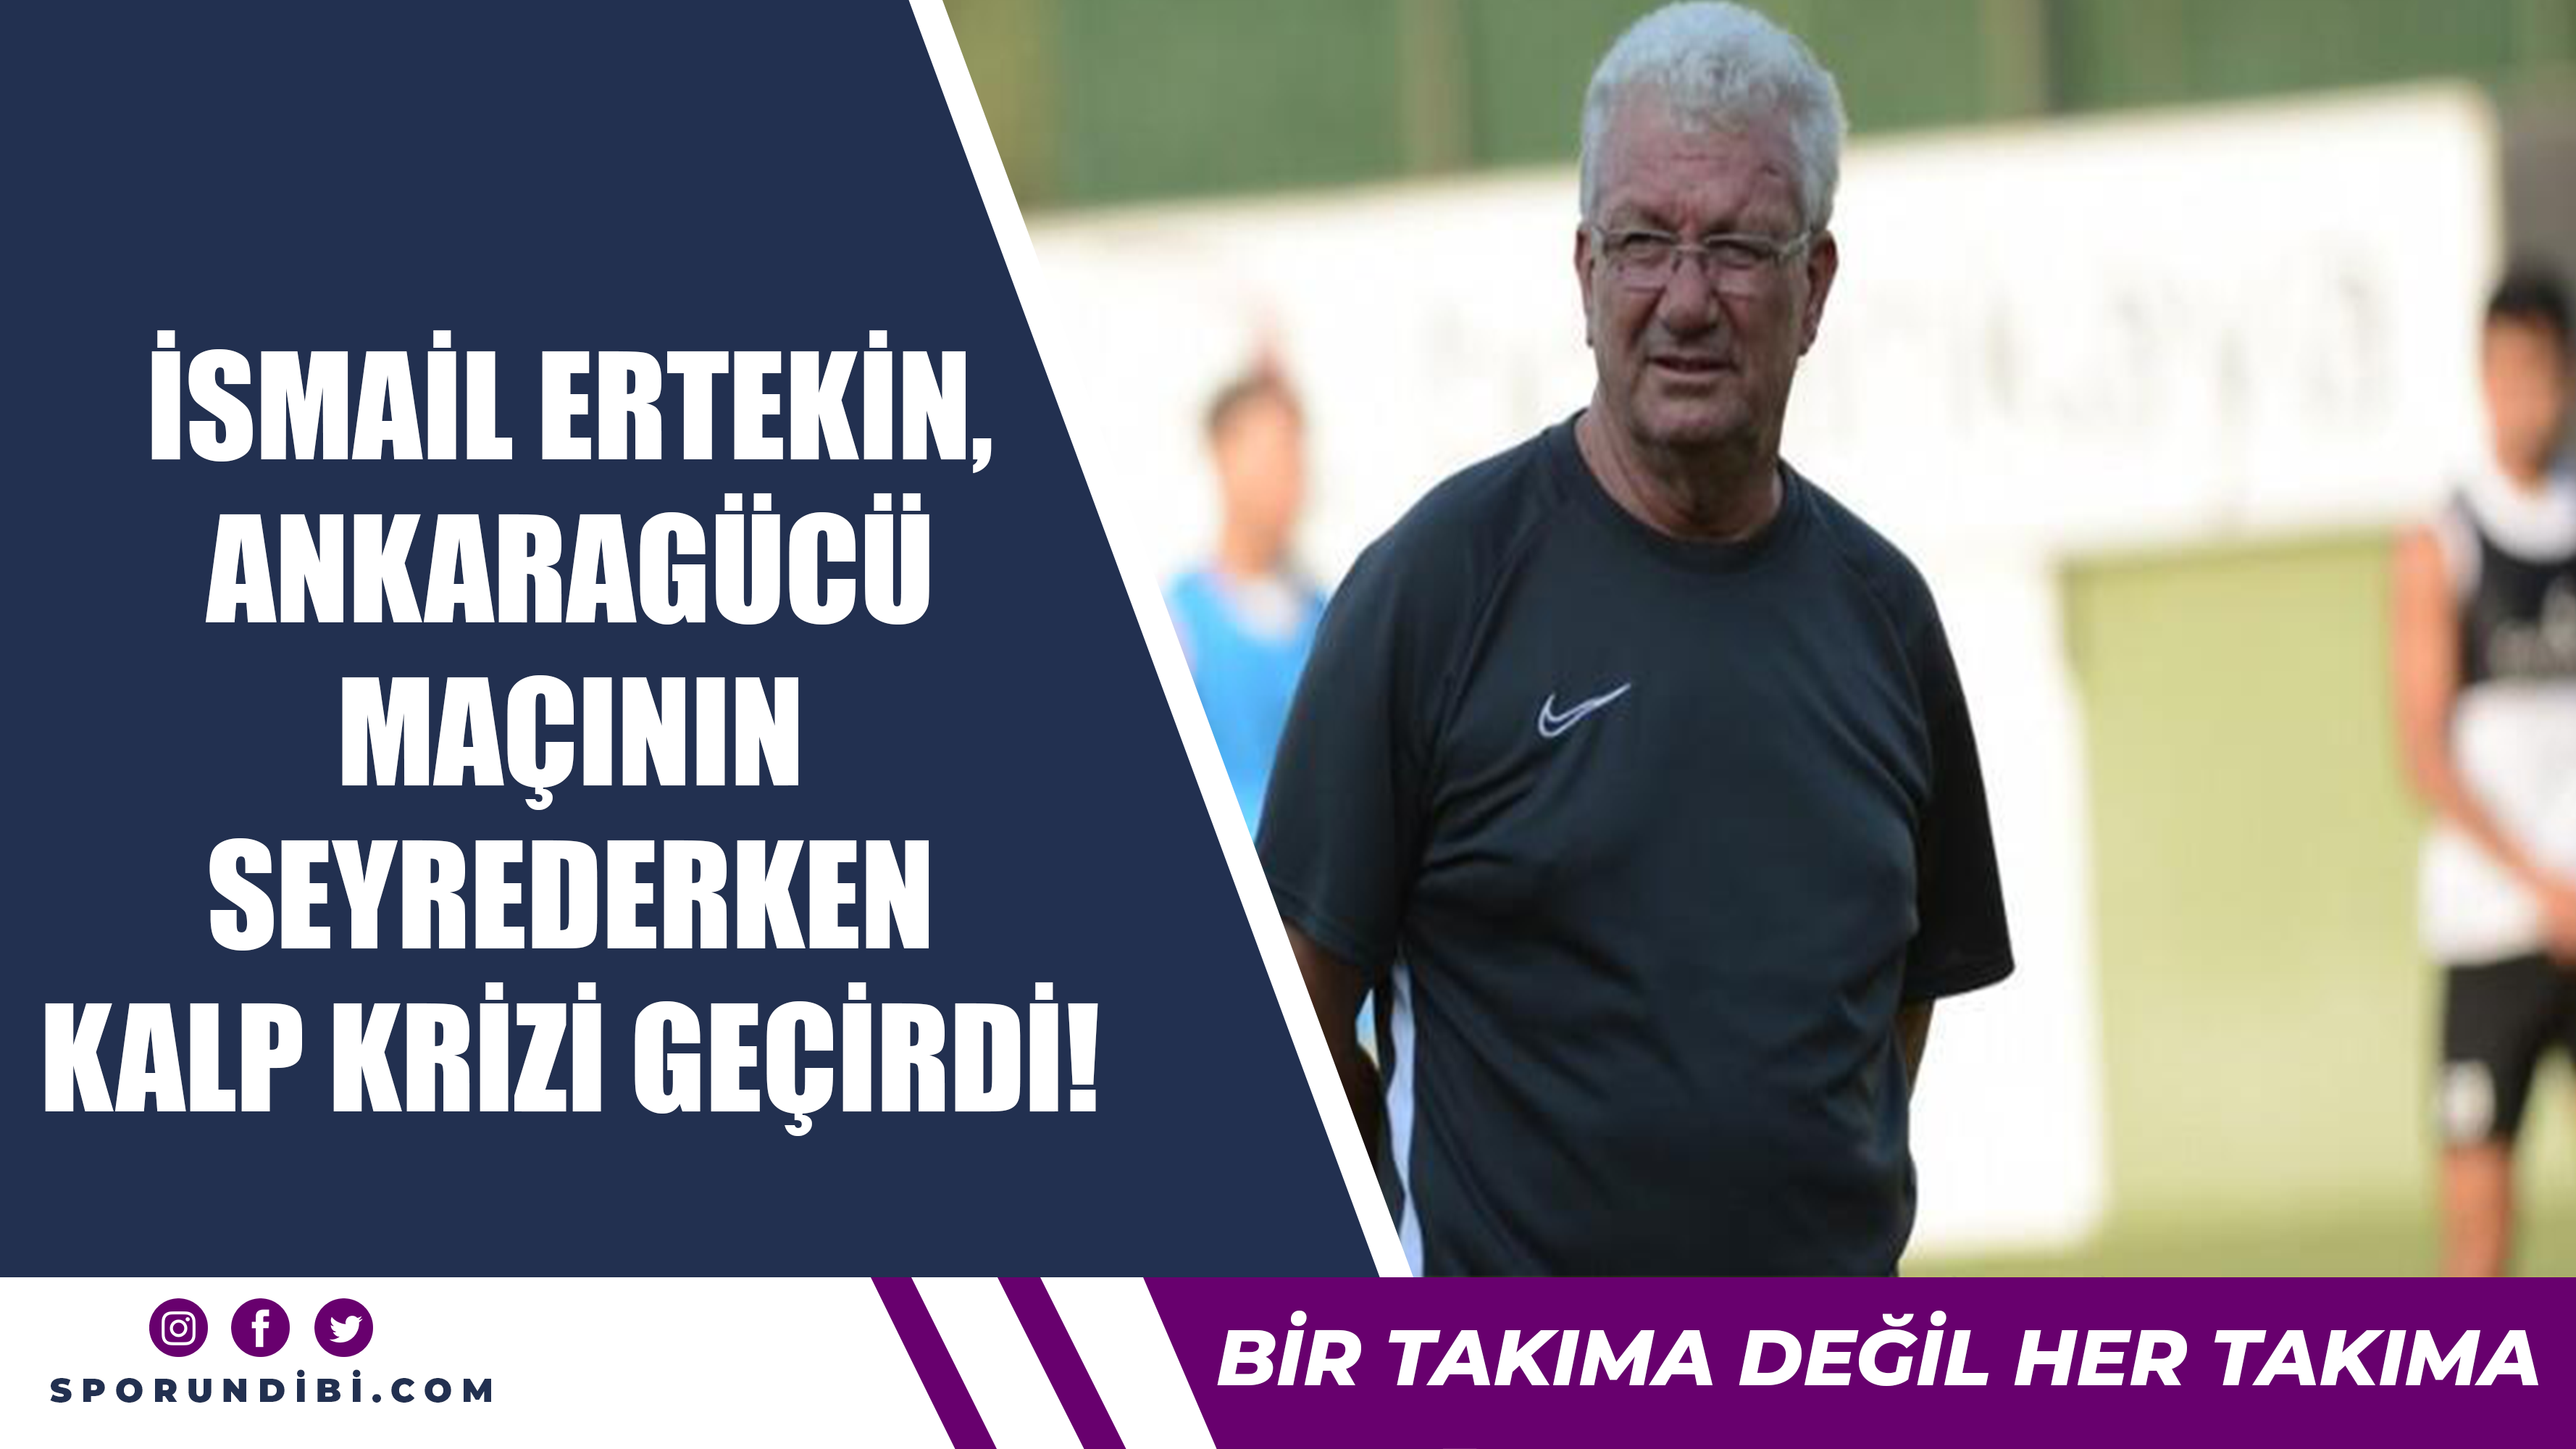 İsmail Ertekin, Ankaragücü maçını seyrederken kalp krizi geçirdi!